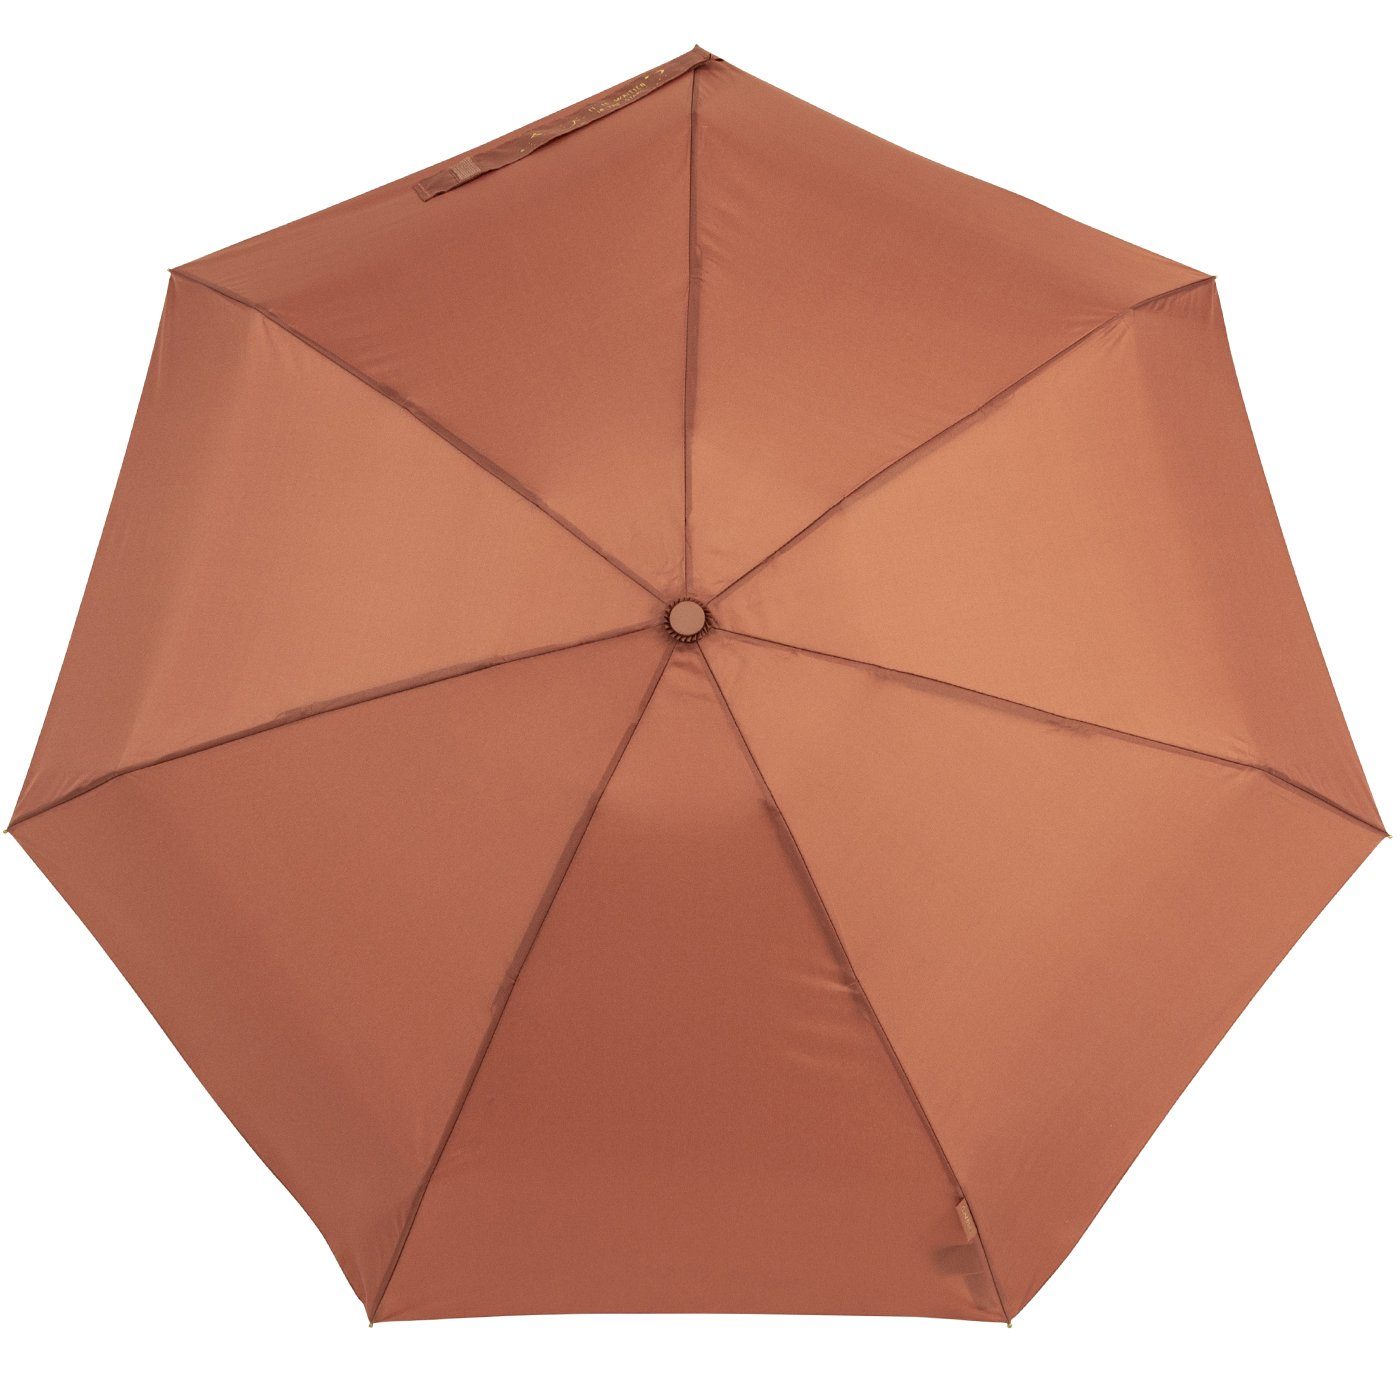 bisetti mit braun, stabil Schließband auf kompakt, und dem goldenem Taschenregenschirm klein, Aufdruck Damen-Regenschirm,